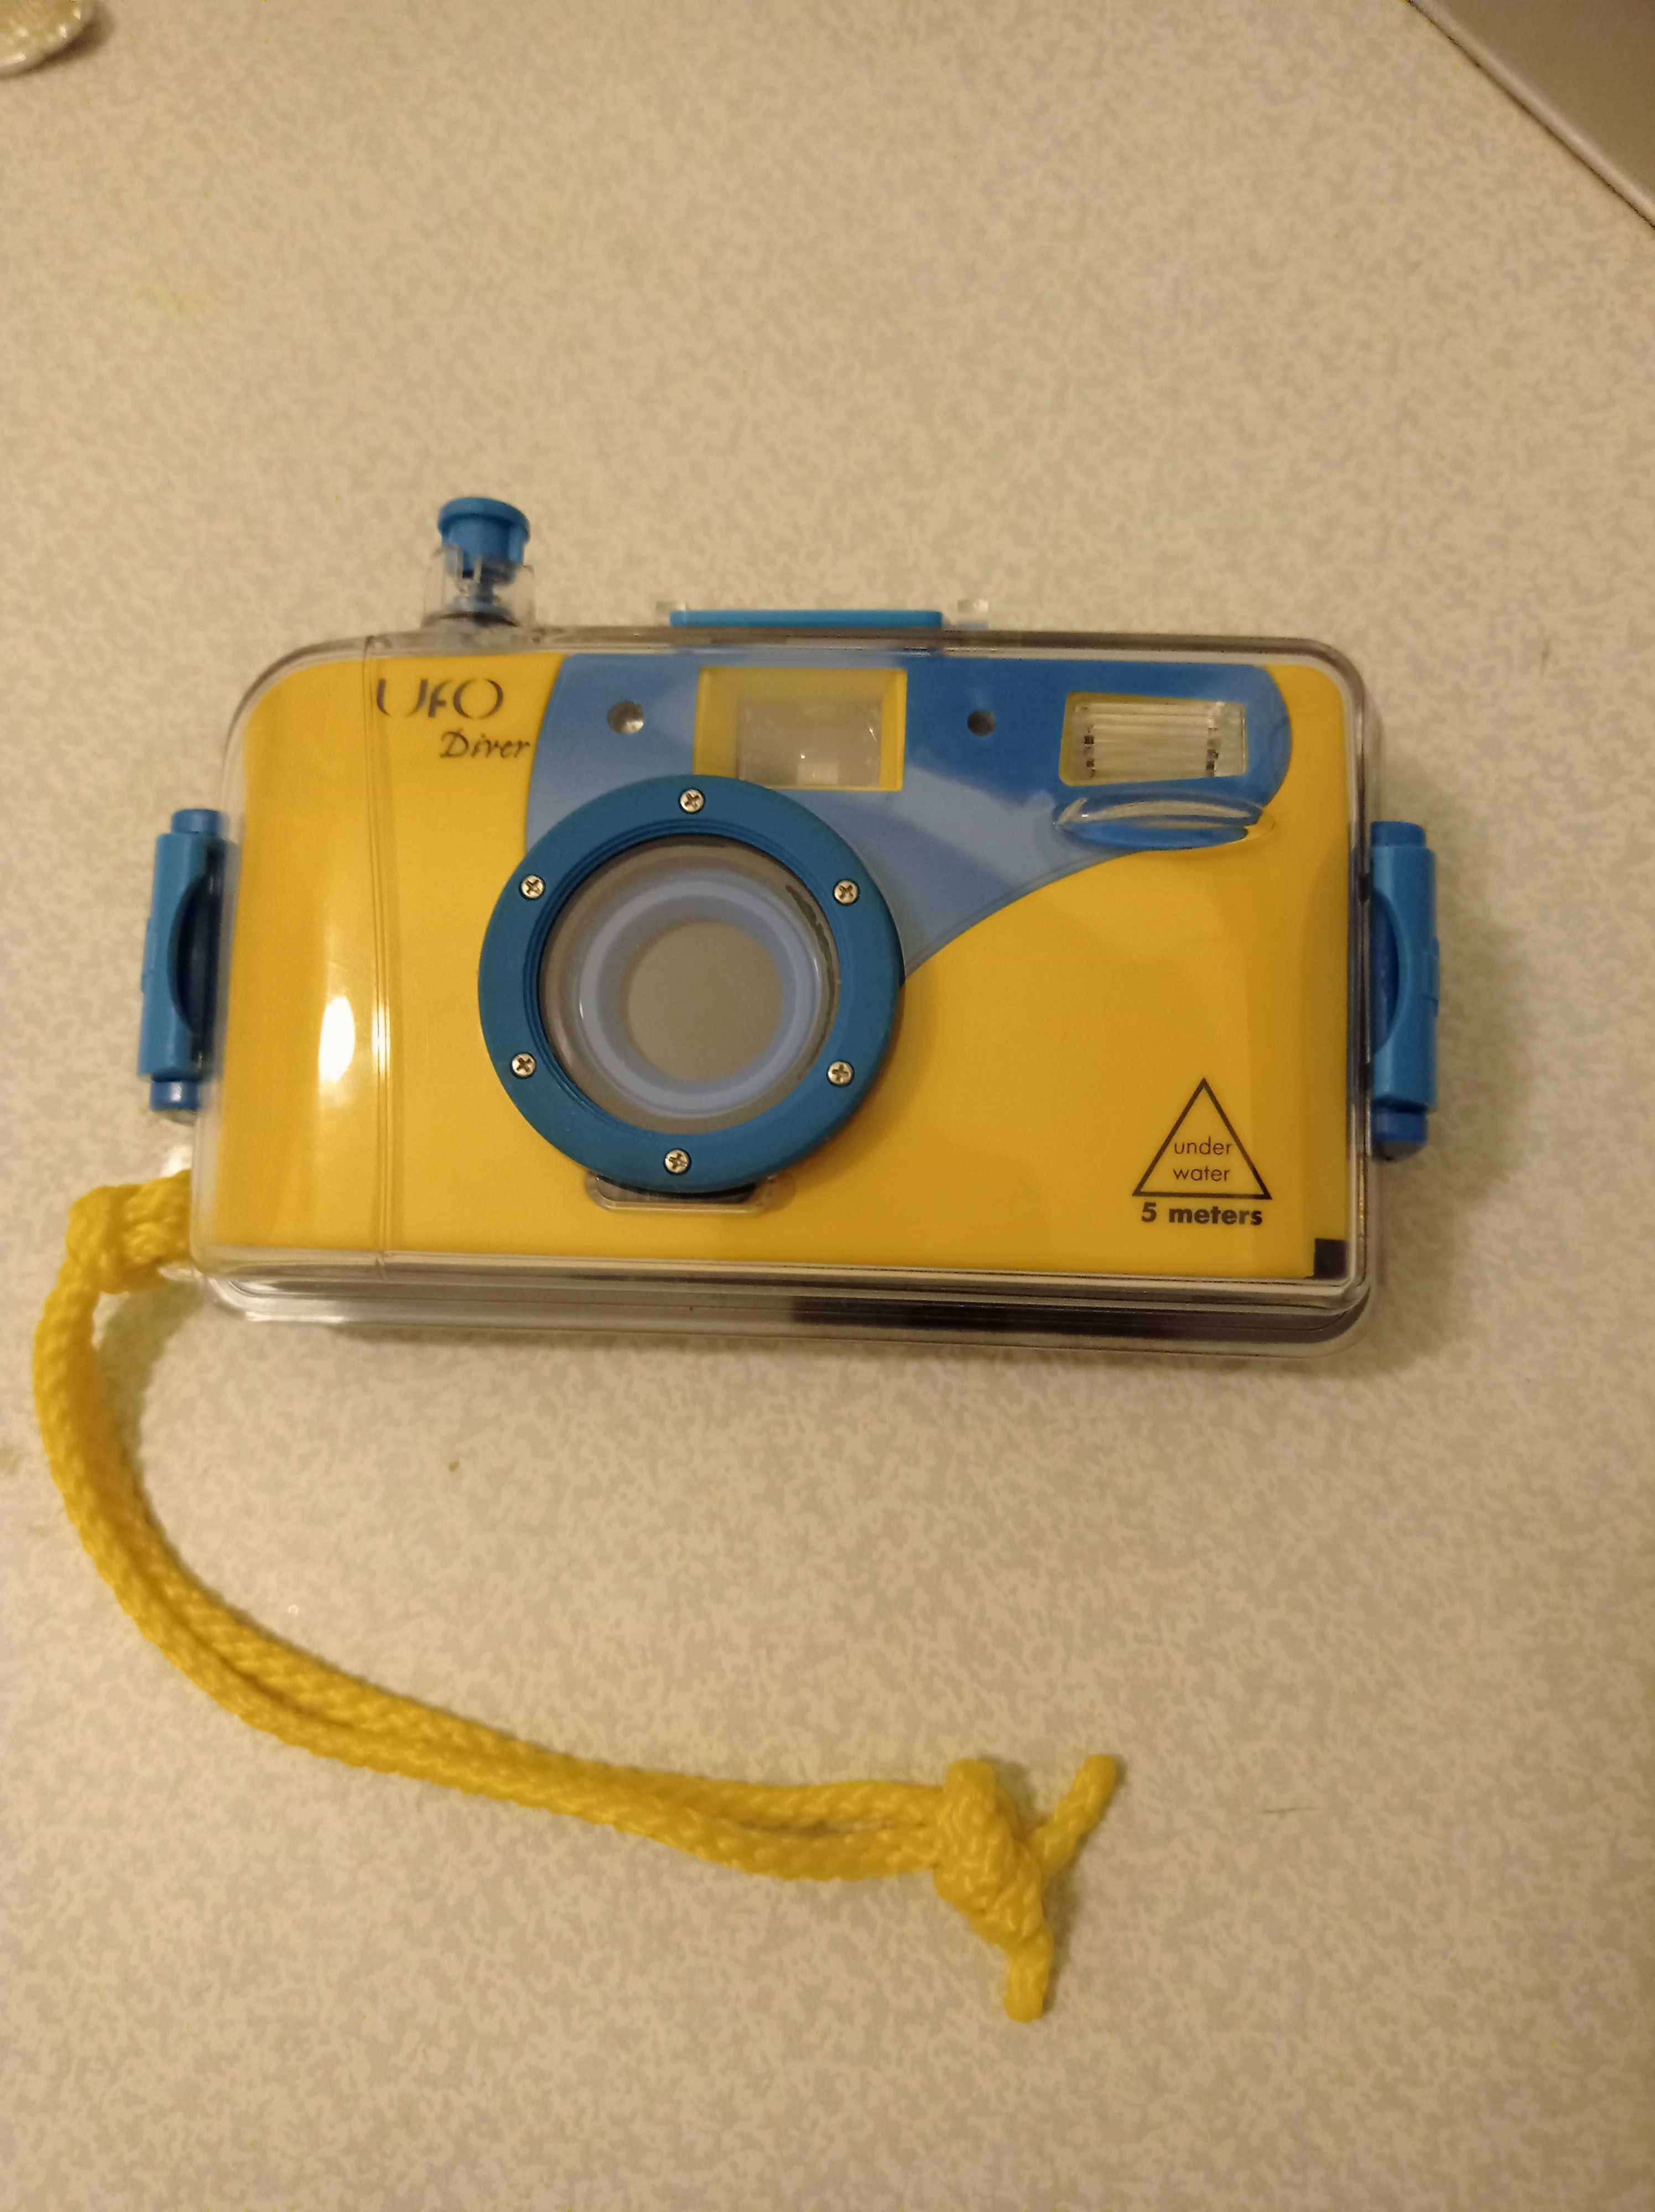 Фотоаппарат для съёмки под водой Diver, пленочный